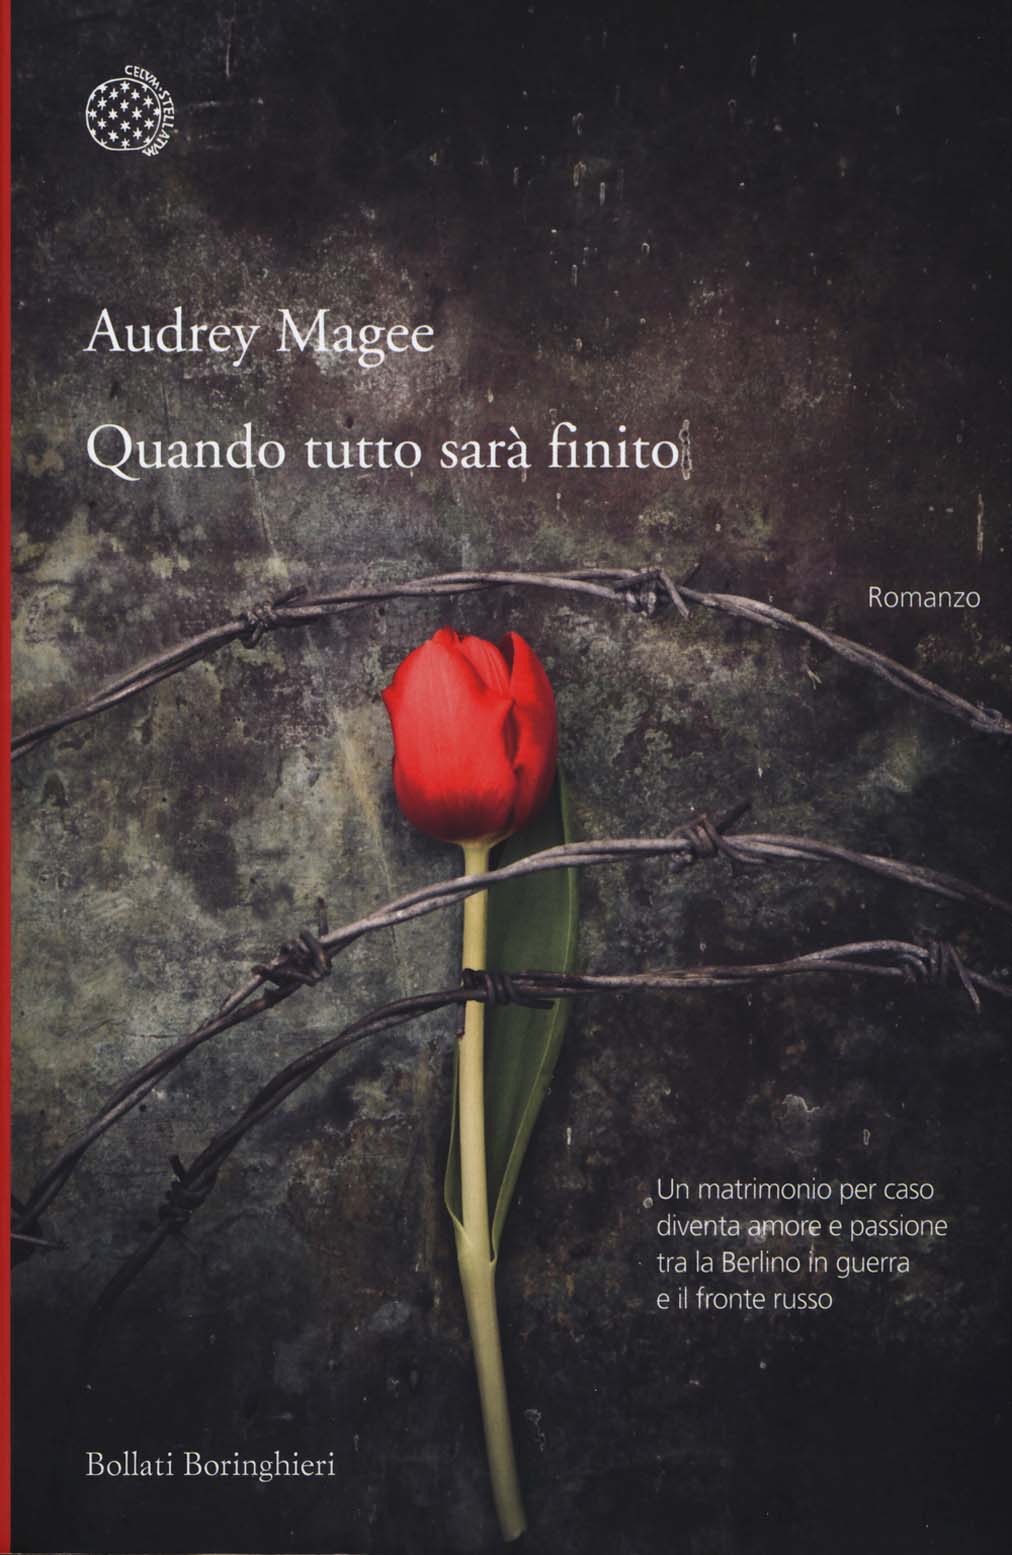 Libri Audrey Magee - Quando Tutto Sara Finito NUOVO SIGILLATO, EDIZIONE DEL 15/01/2015 SUBITO DISPONIBILE